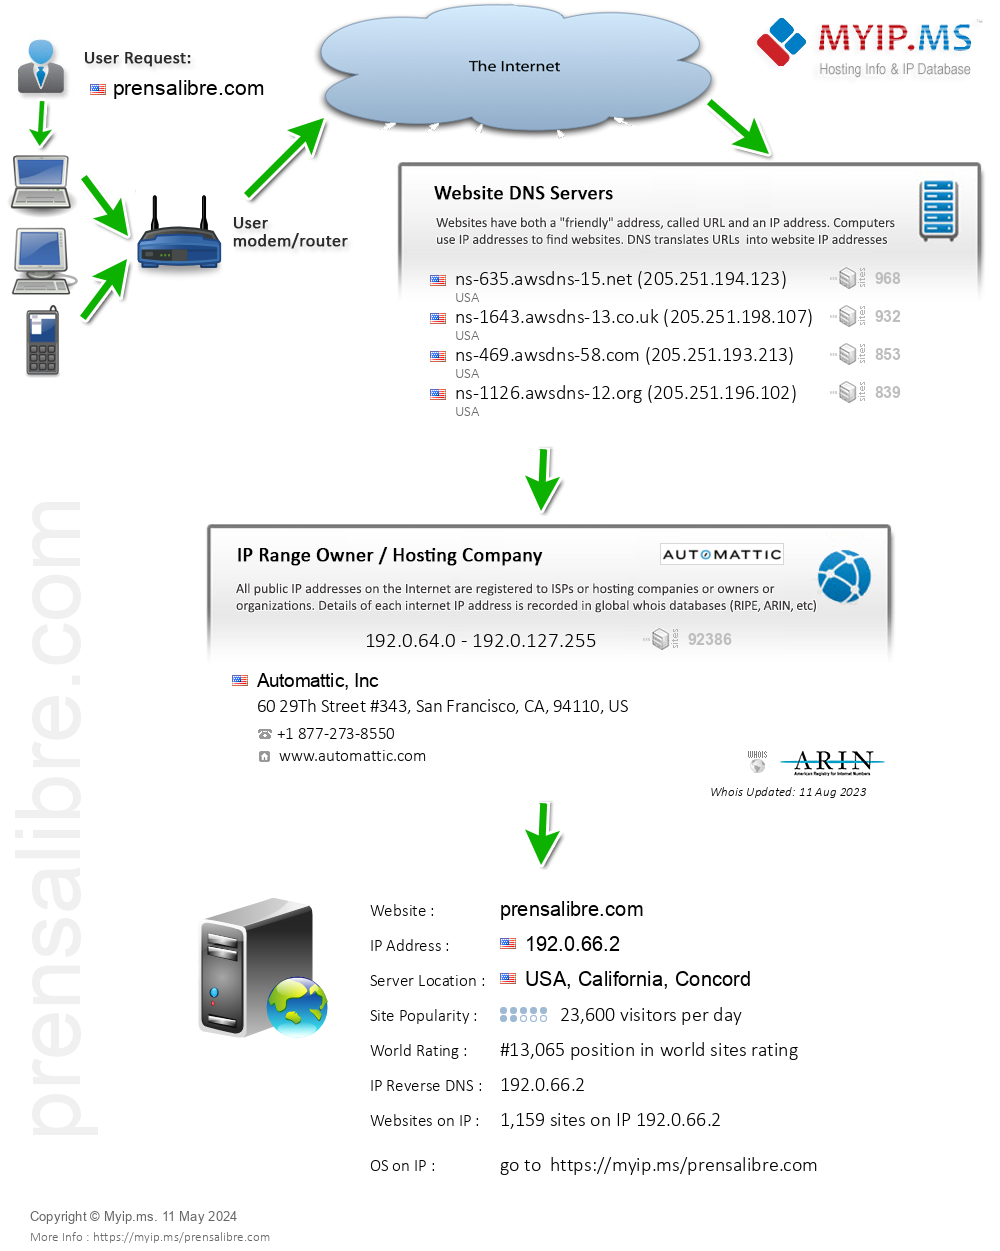 Prensalibre.com - Website Hosting Visual IP Diagram